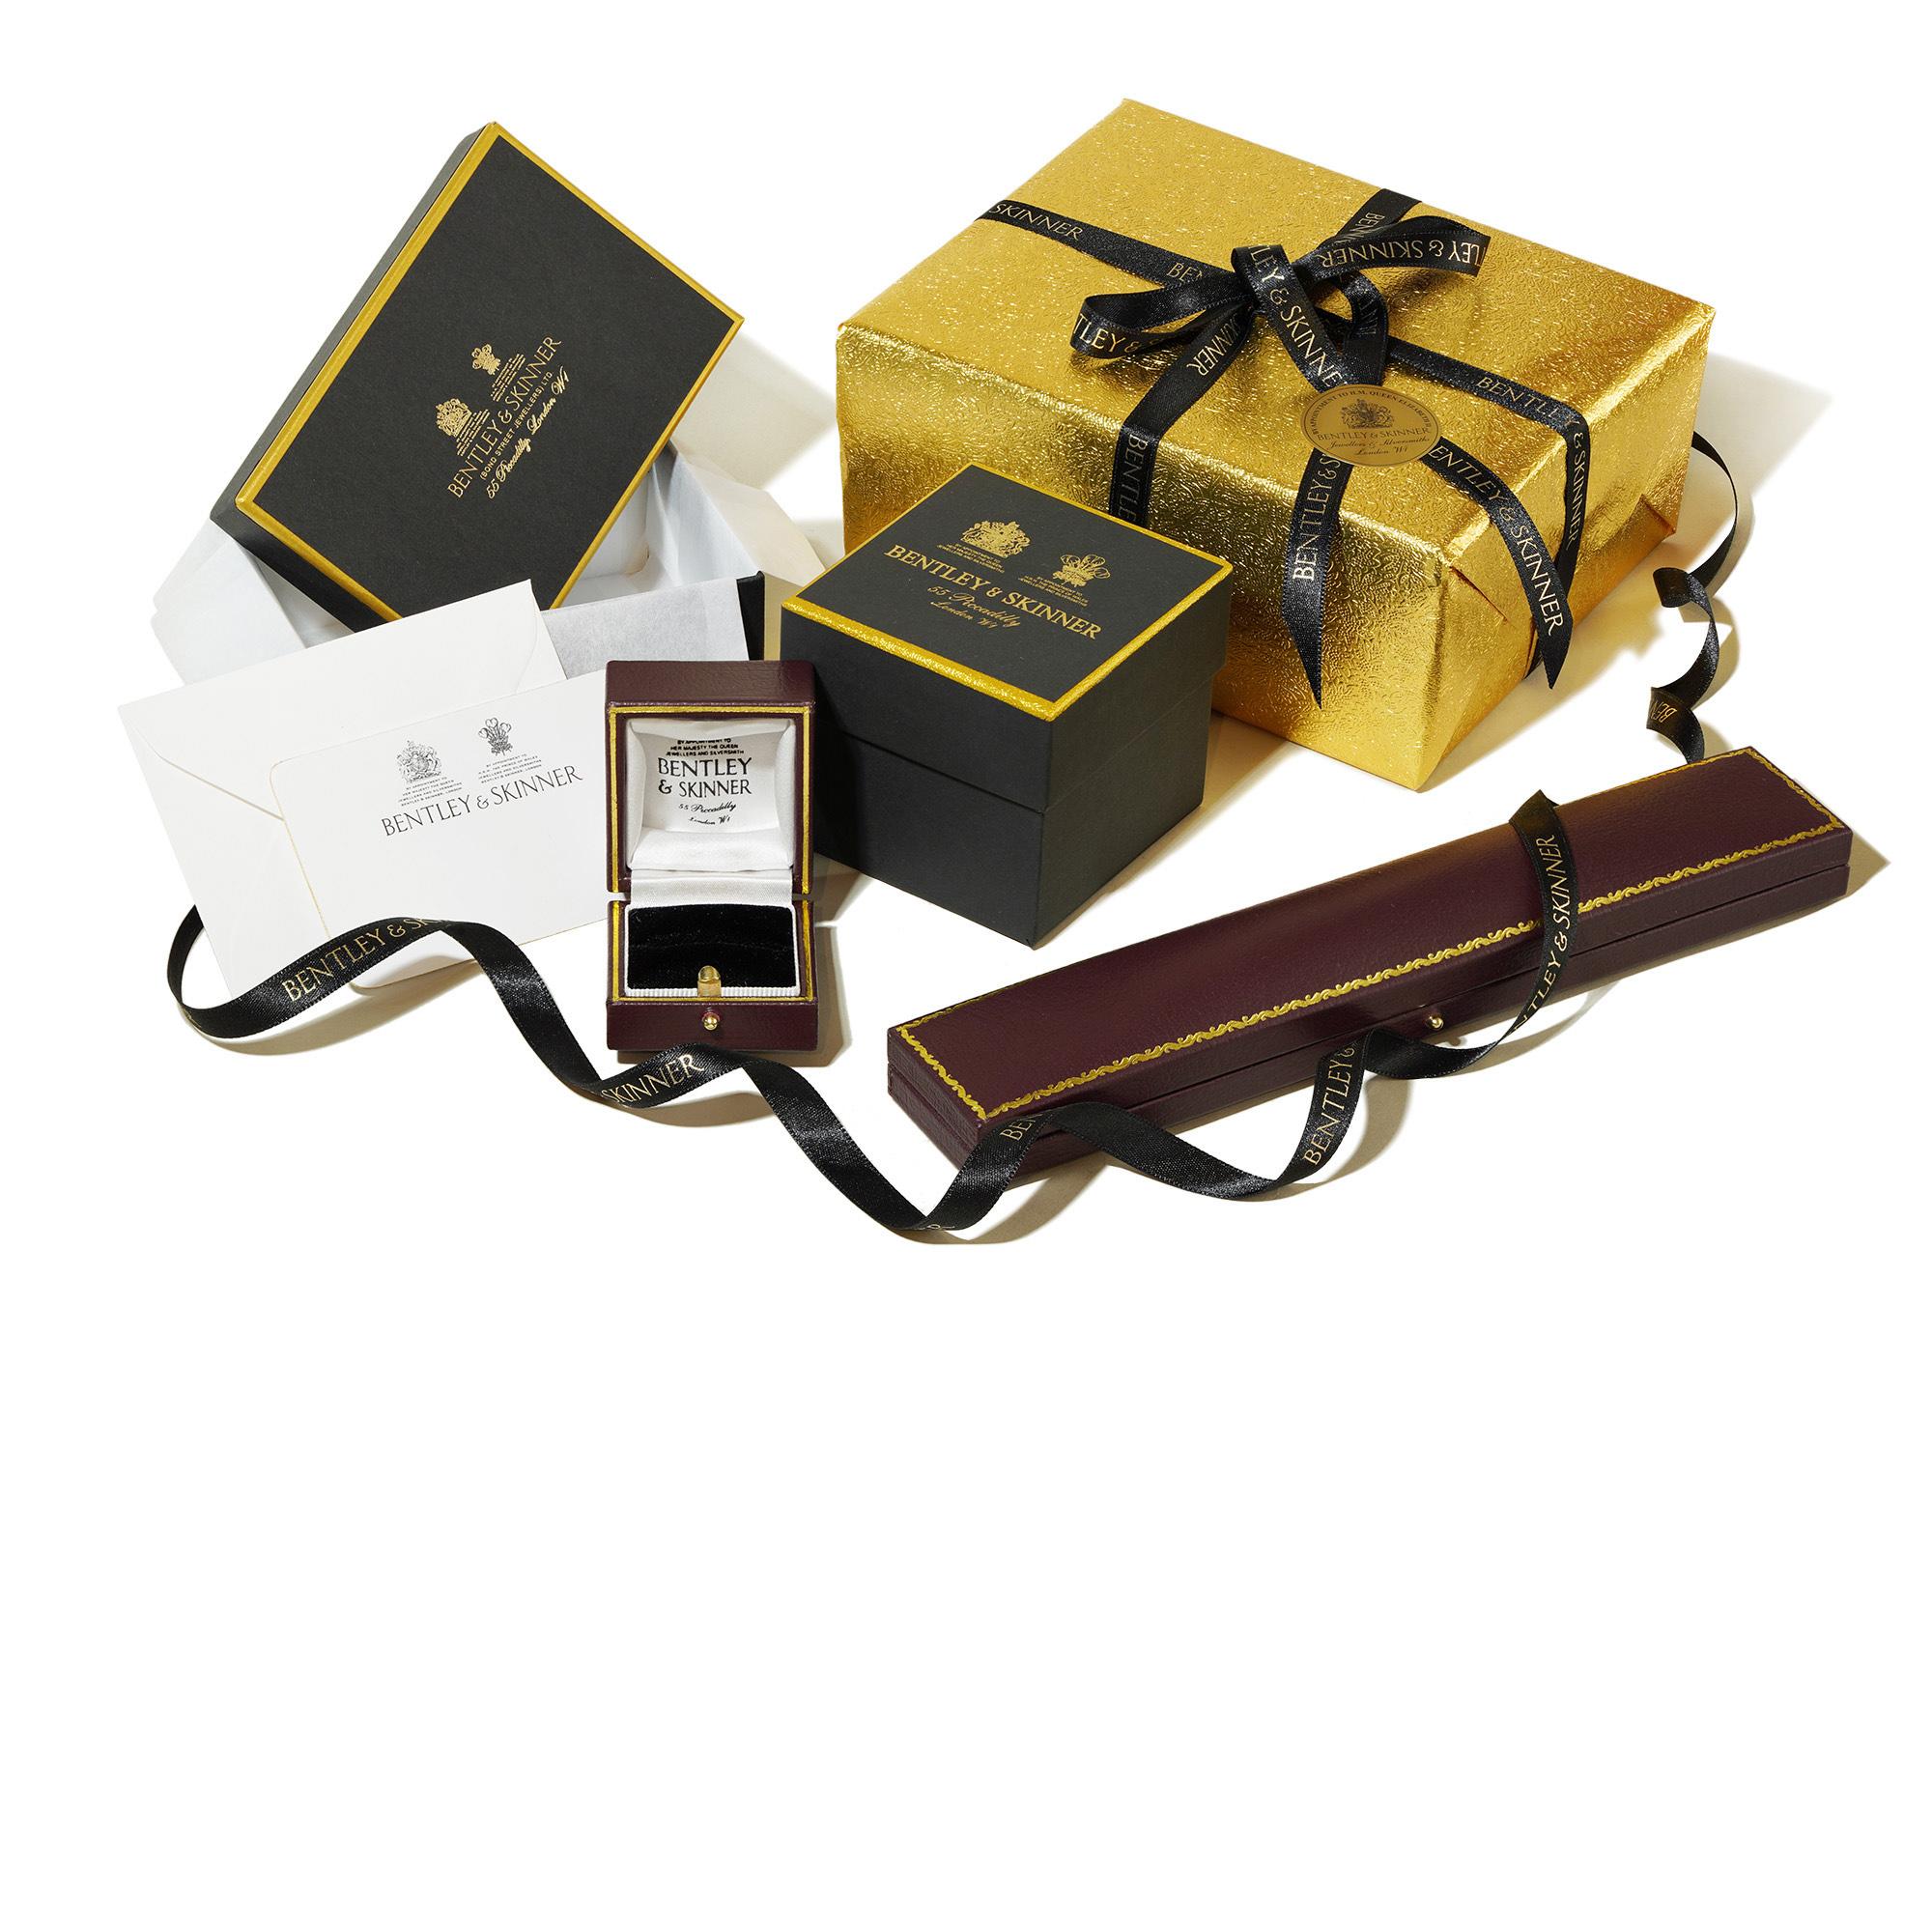 Cabochon Faberge Jewelled Bowenite Box